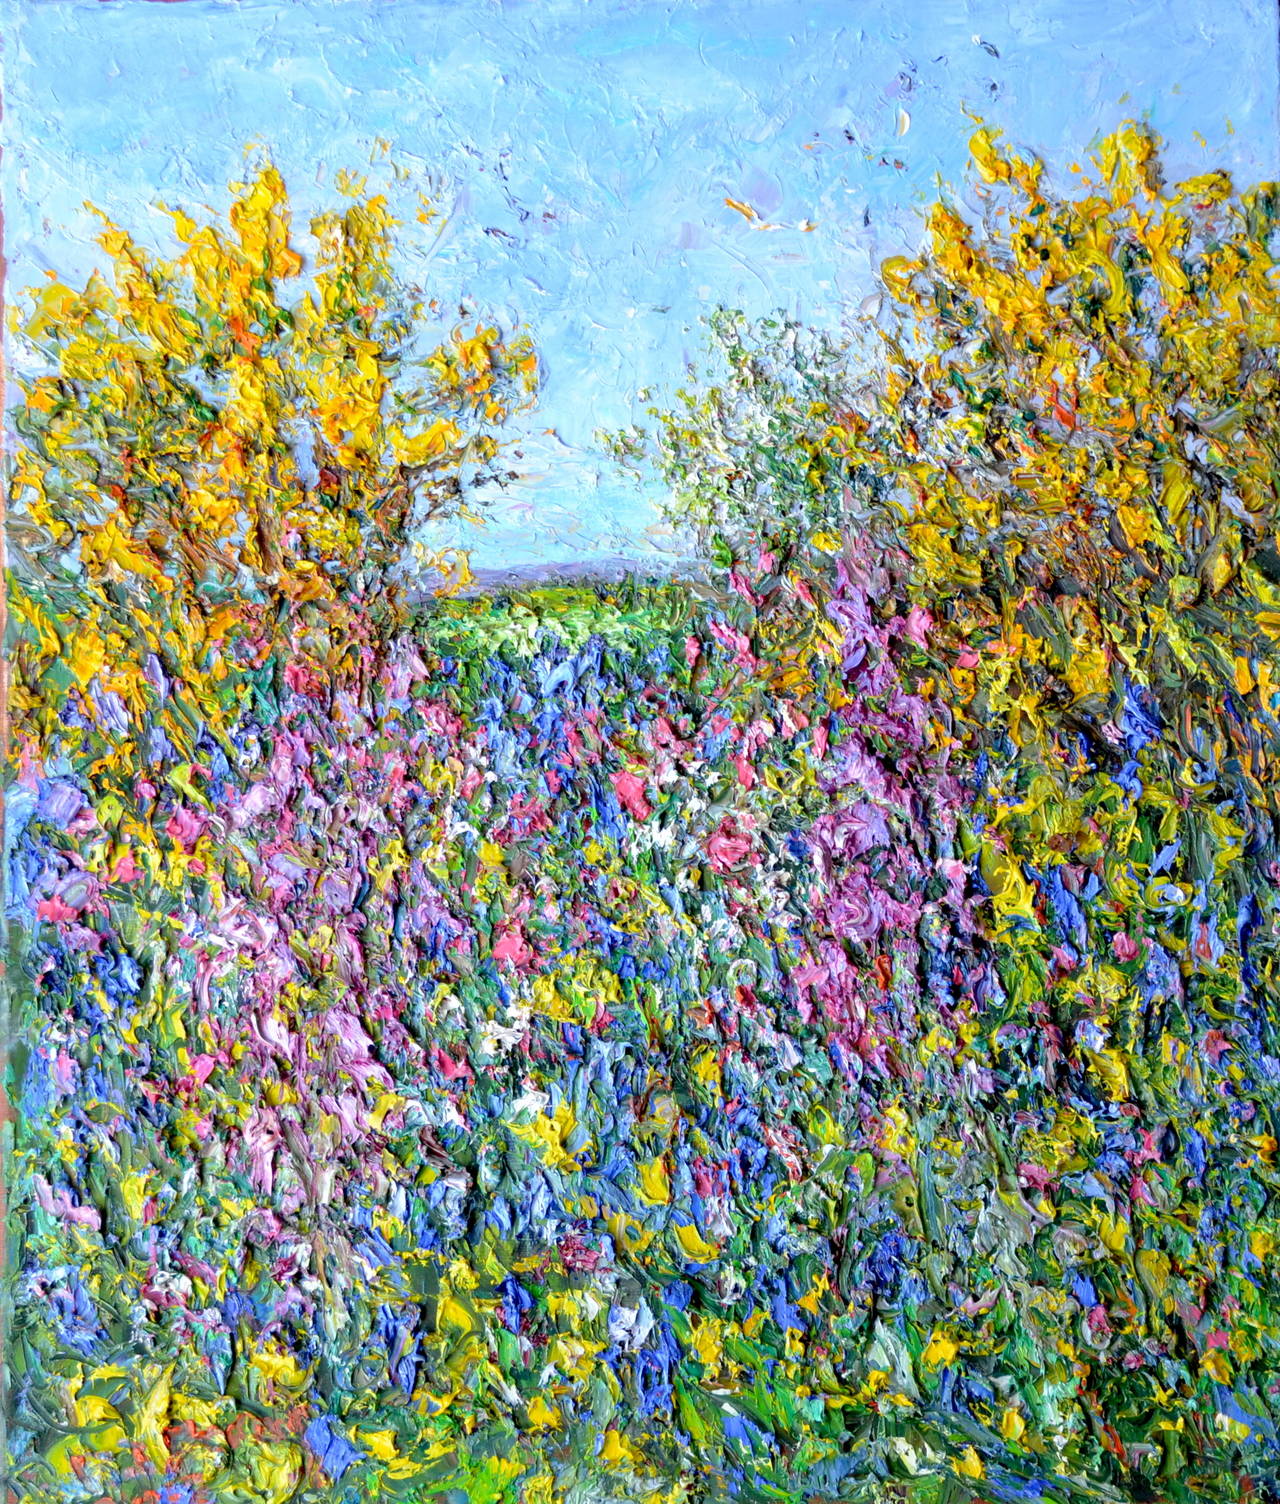 Haie de Cornish, fin du printemps.  Peinture à l'huile - paysage contemporain - Painting de Michael Strang